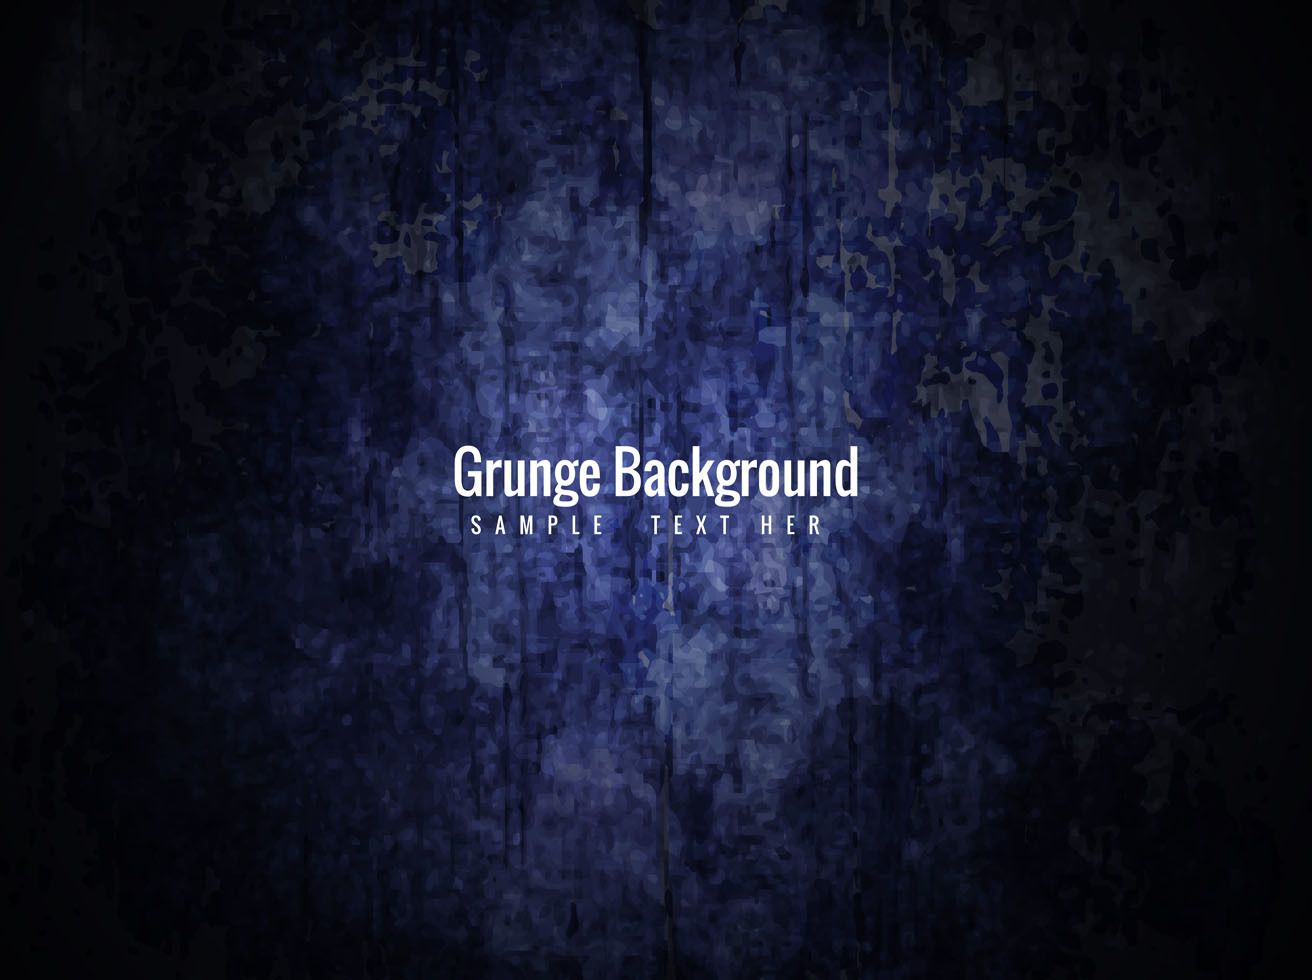 Free Vector Grunge Background